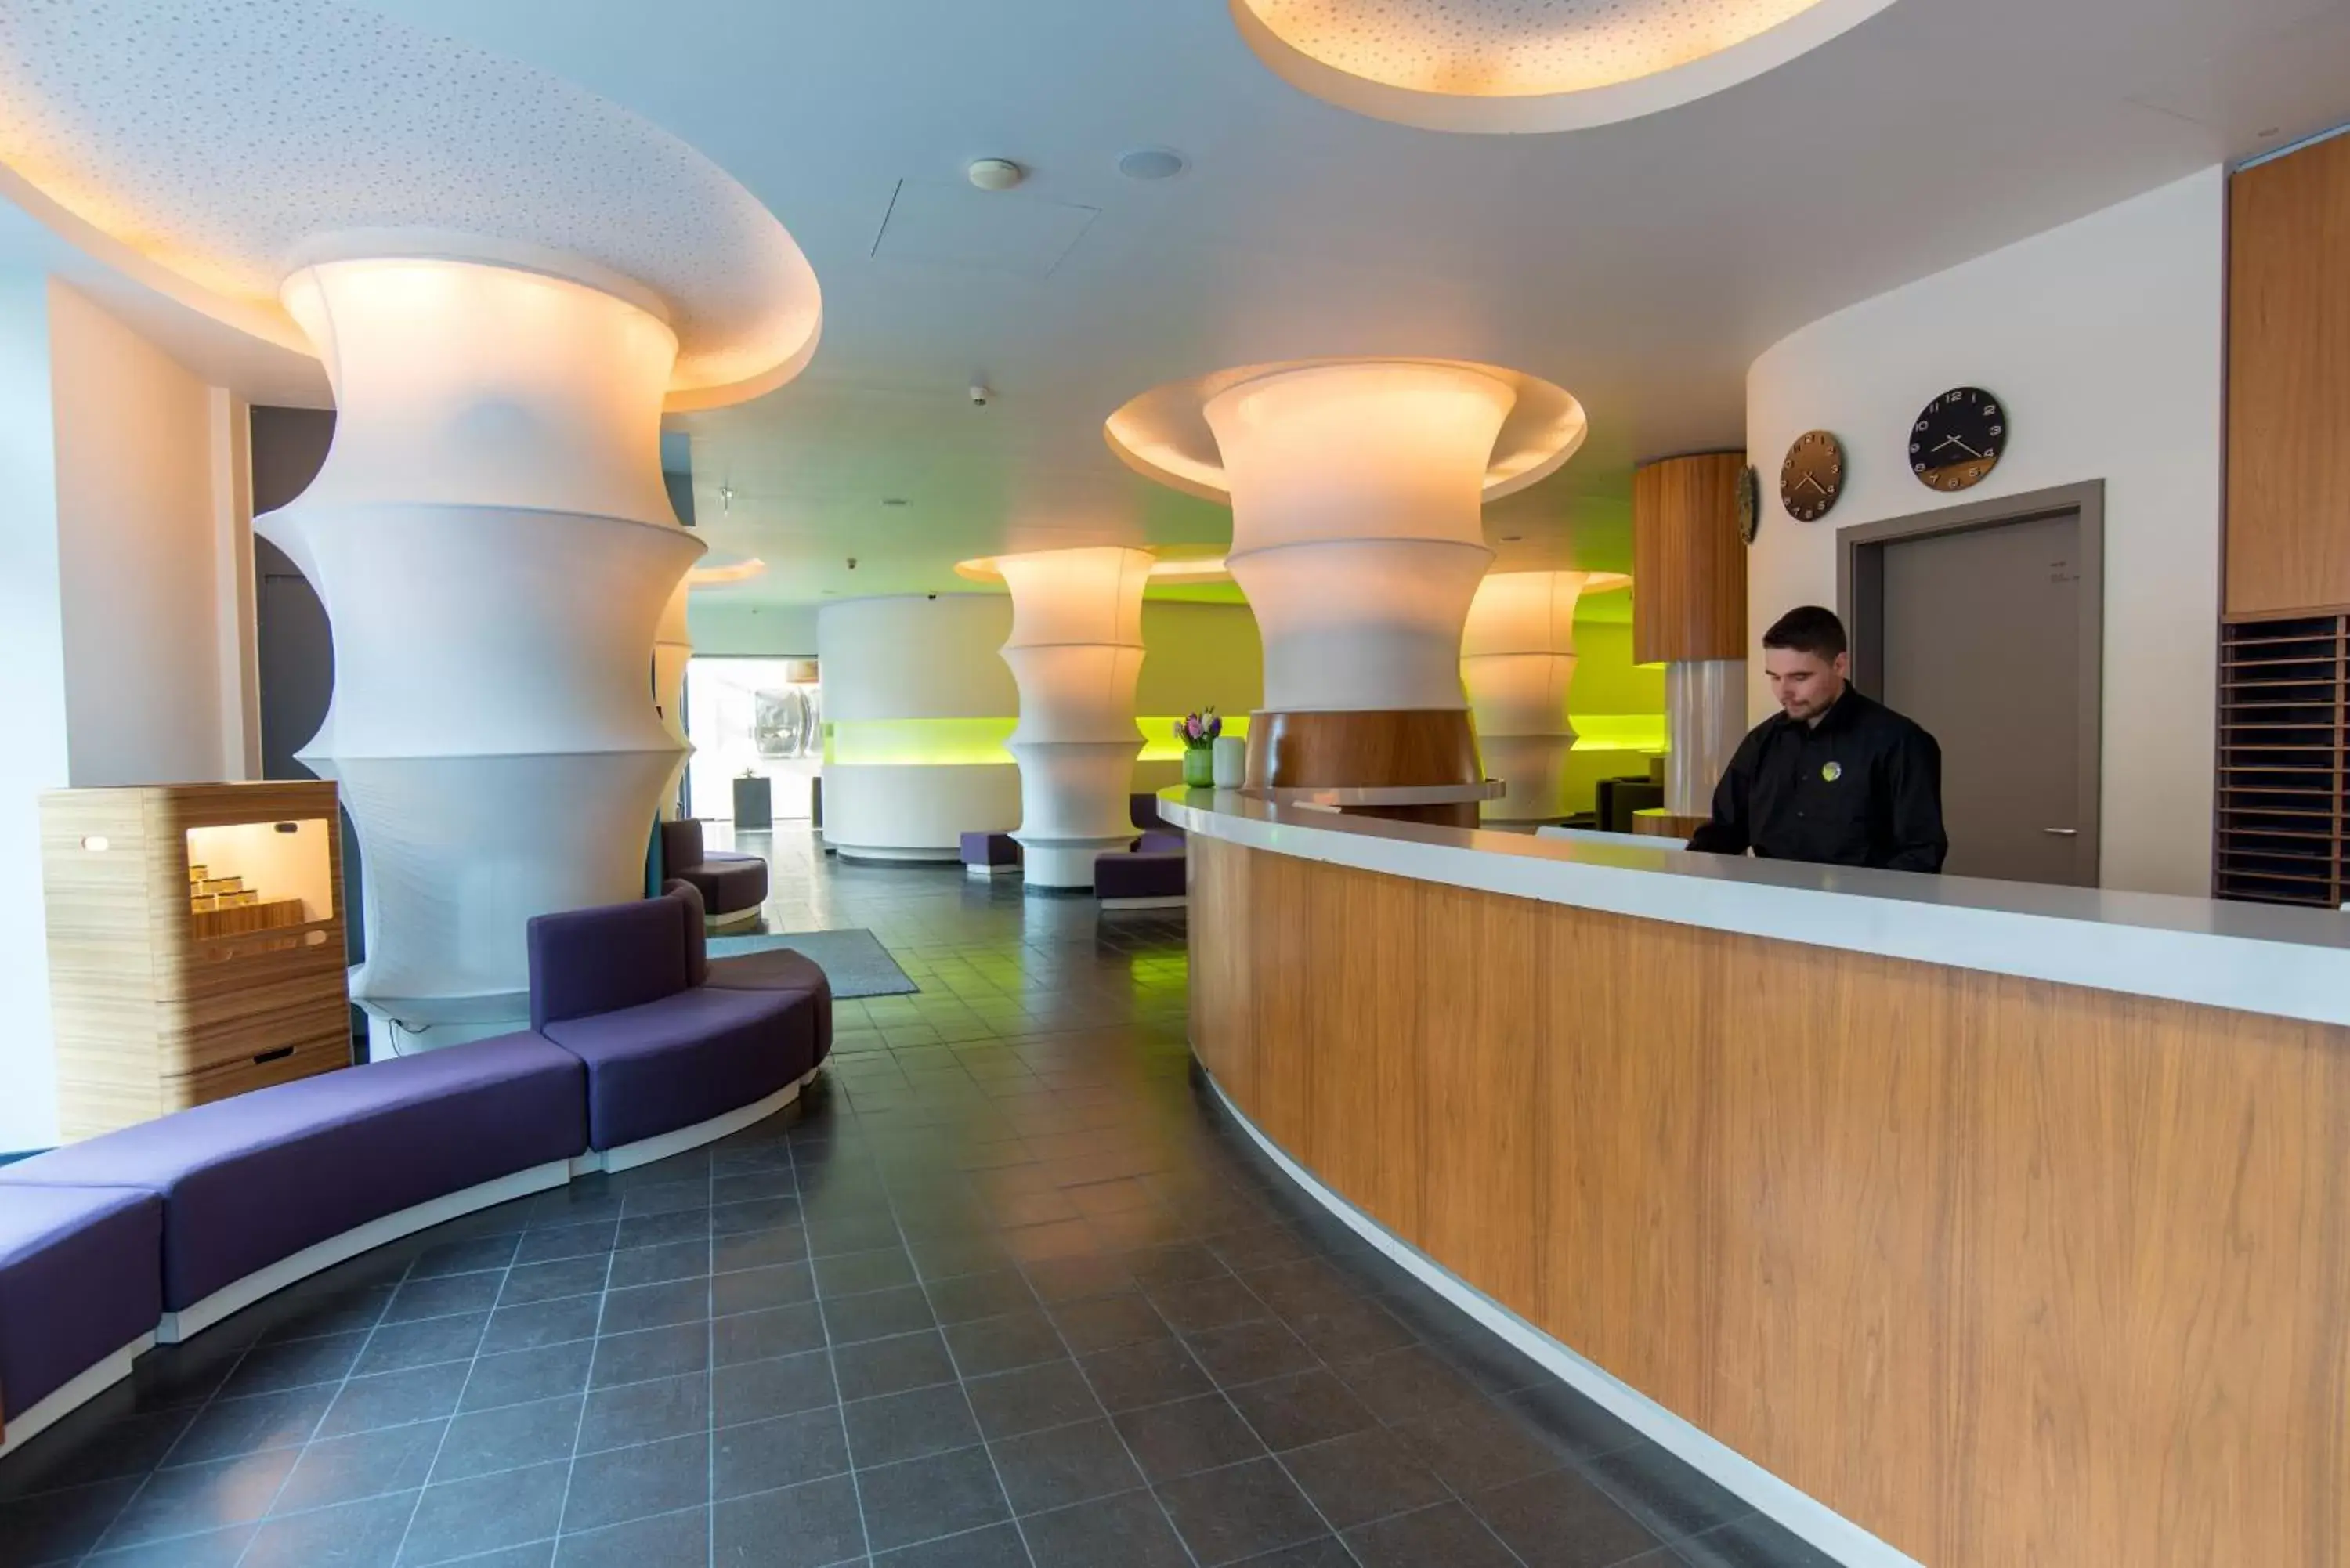 Lobby or reception, Lobby/Reception in Ku'Damm 101 Hotel